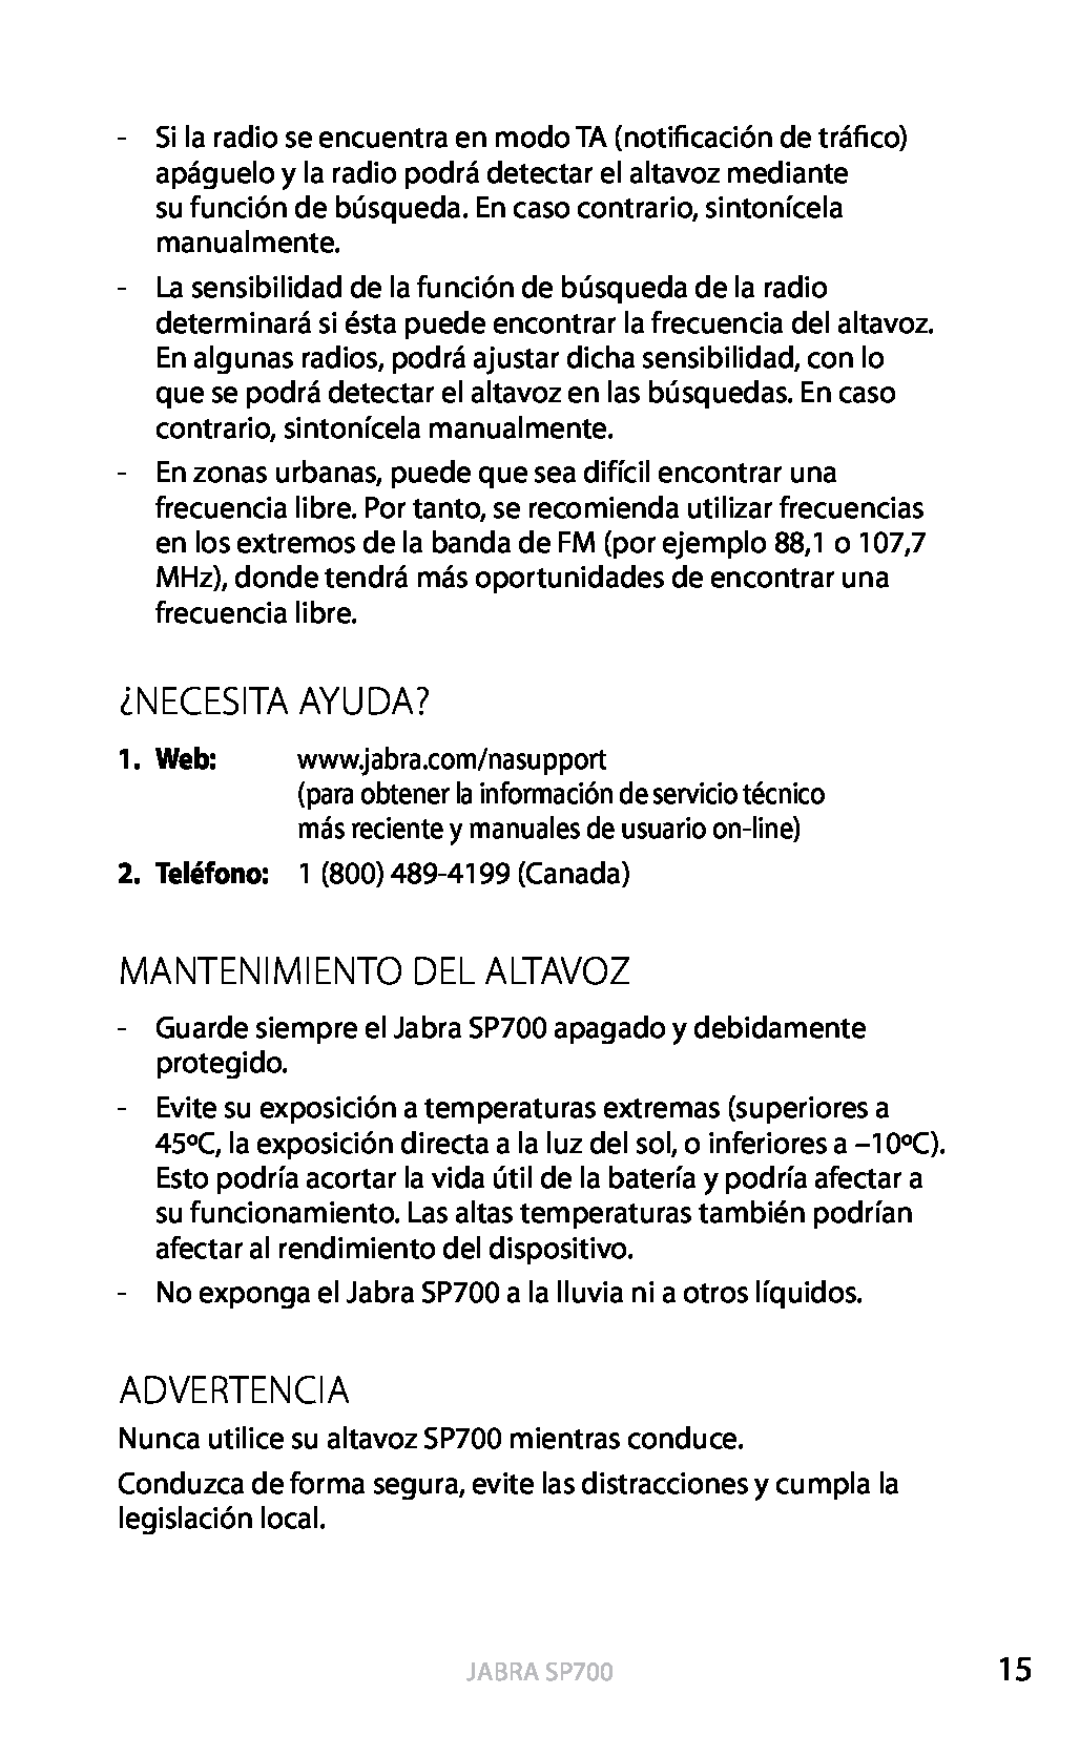 Jabra SP700 user manual ¿Necesita Ayuda?, Mantenimiento Del Altavoz, Advertencia, Español 